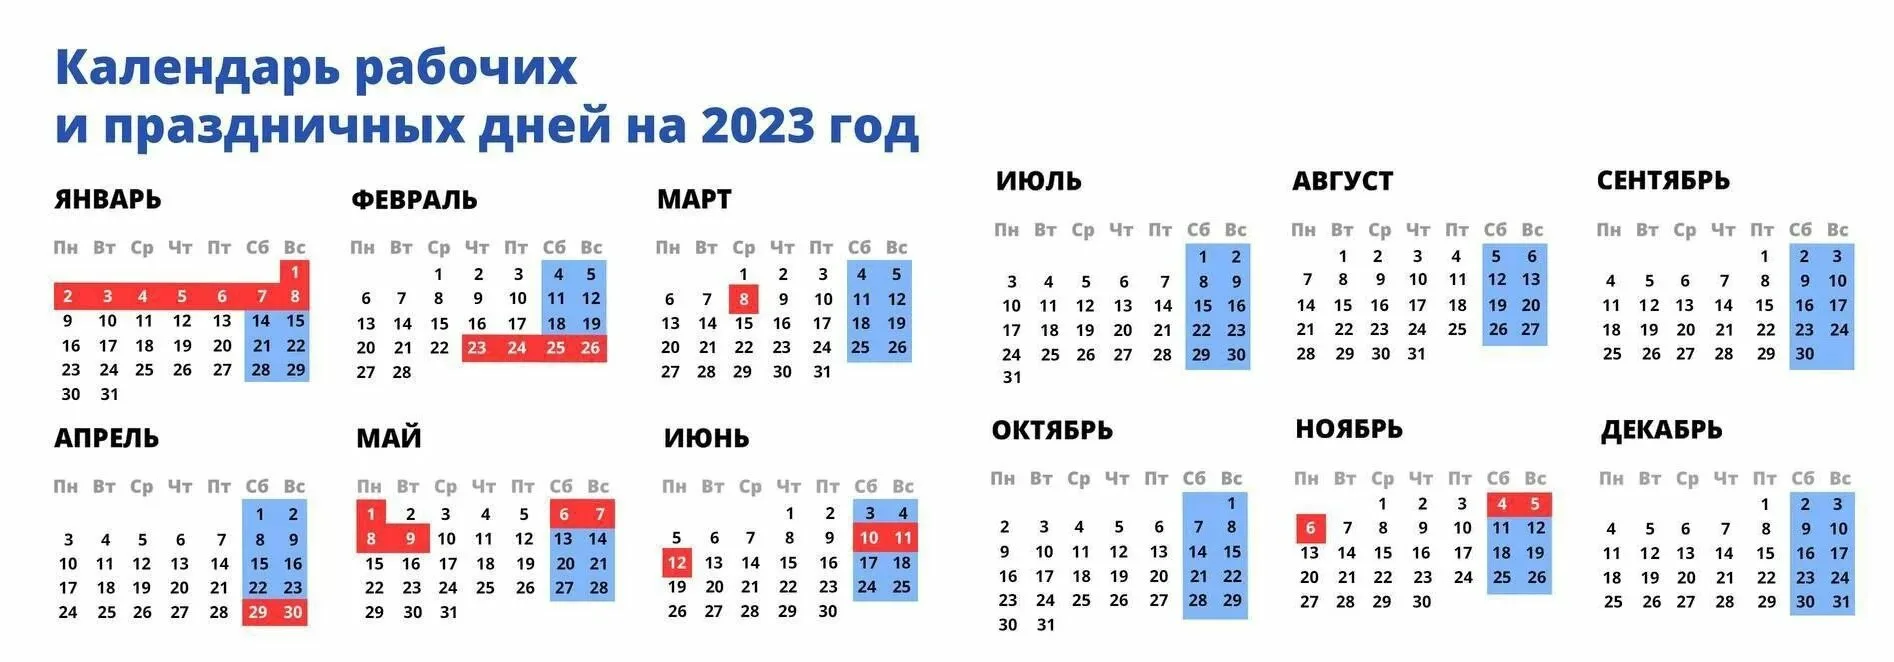 Праздники в москве в феврале. Выходные и праздничные дни в 2023 году. Пращдничные ди в марте. Выходные дни в феврале. Ghf;pybxyst LYB D athdfkt.